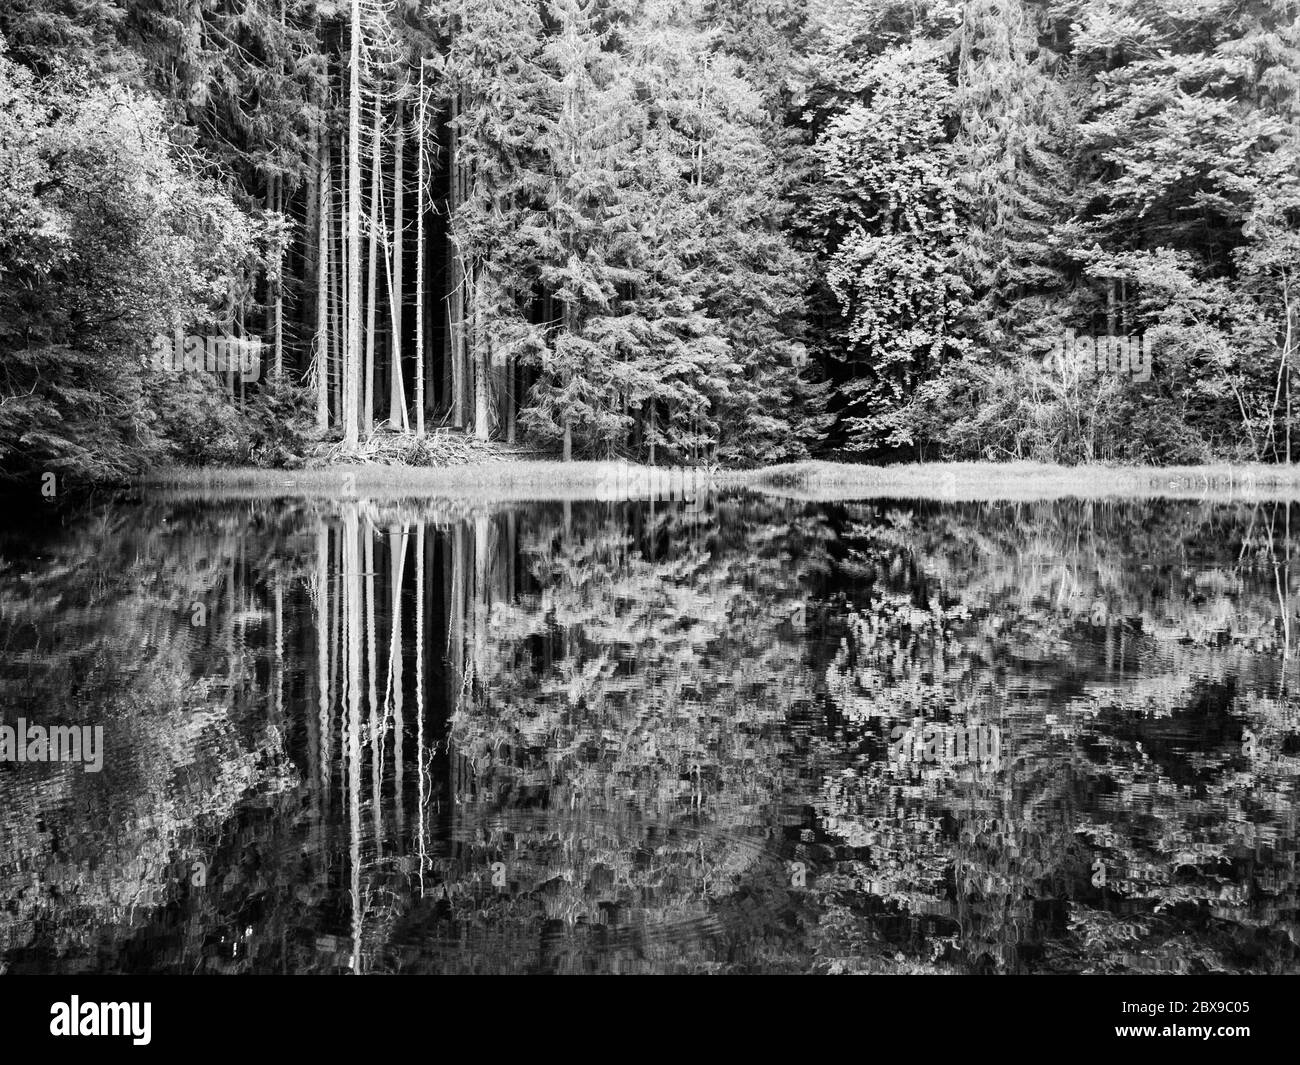 Lago di Boubin. Riflesso di alberi verdi lussureggianti di Foresta Primeval di Boubin, Montagne di Sumava, Repubblica Ceca. Immagine in bianco e nero. Foto Stock